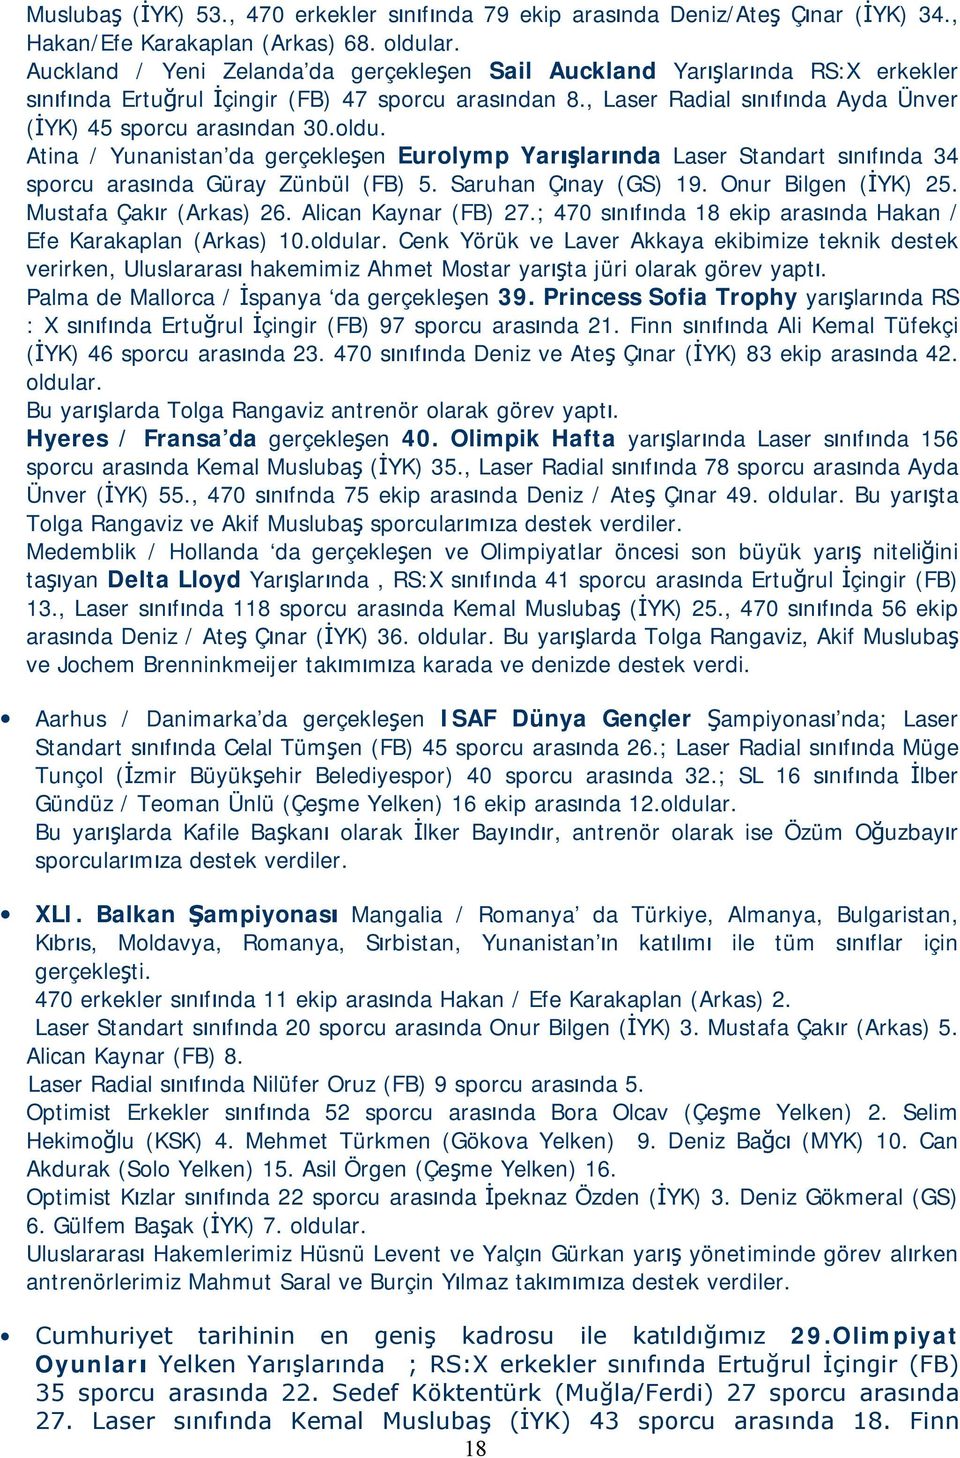 oldu. Atina / Yunanistan da gerçekleşen Eurolymp Yarışlarında Laser Standart sınıfında 34 sporcu arasında Güray Zünbül (FB) 5. Saruhan Çınay (GS) 19. Onur Bilgen (İYK) 25. Mustafa Çakır (Arkas) 26.